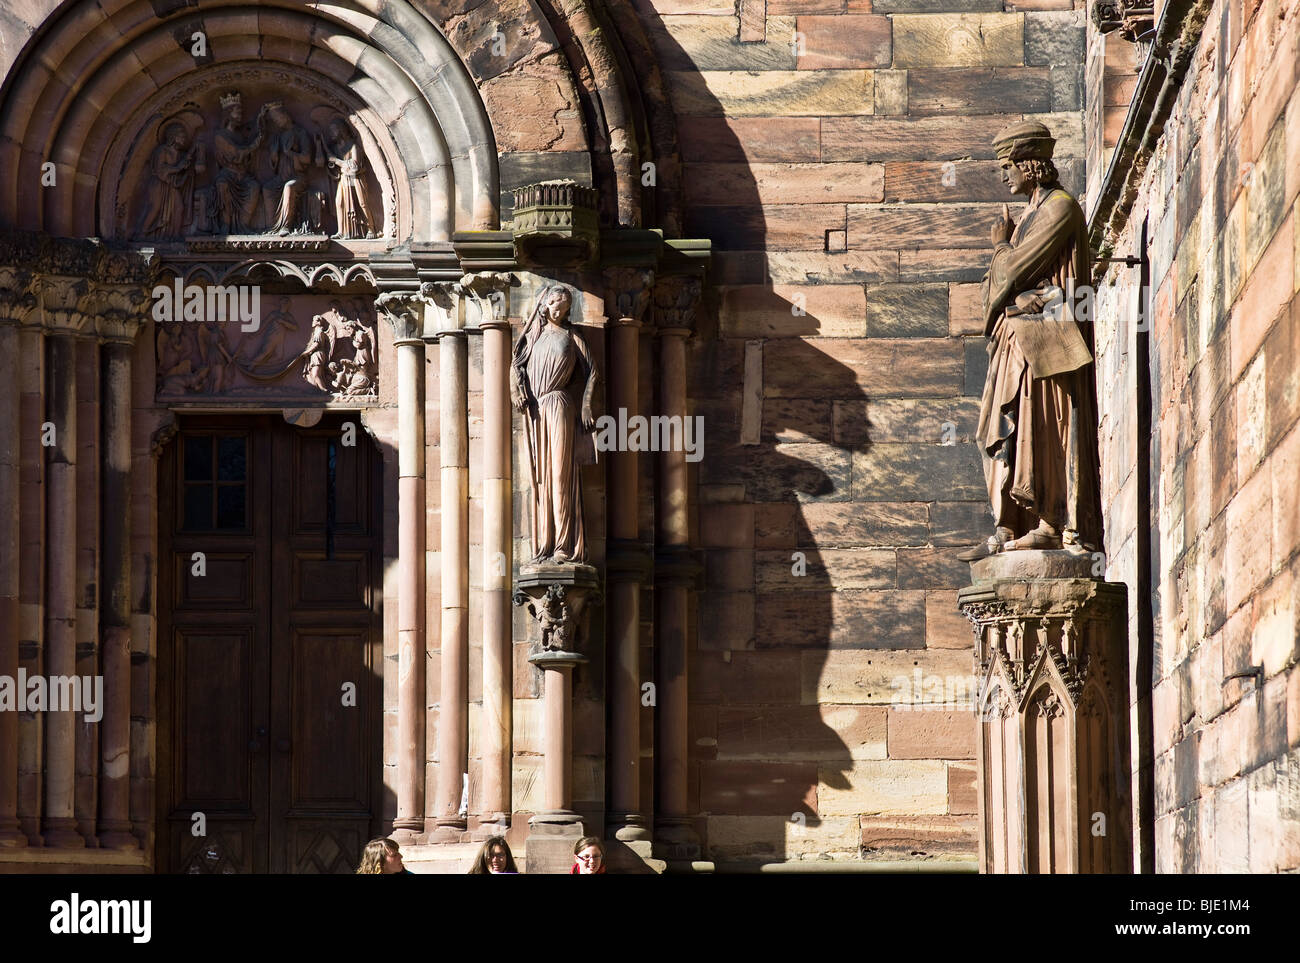 Strasbourg cathédrale gothique Notre-Dame, 14e siècle, arrêt portail,  bandeau Synagogue et Erwin von Steinbach statues, Alsace, France, Europe  Photo Stock - Alamy